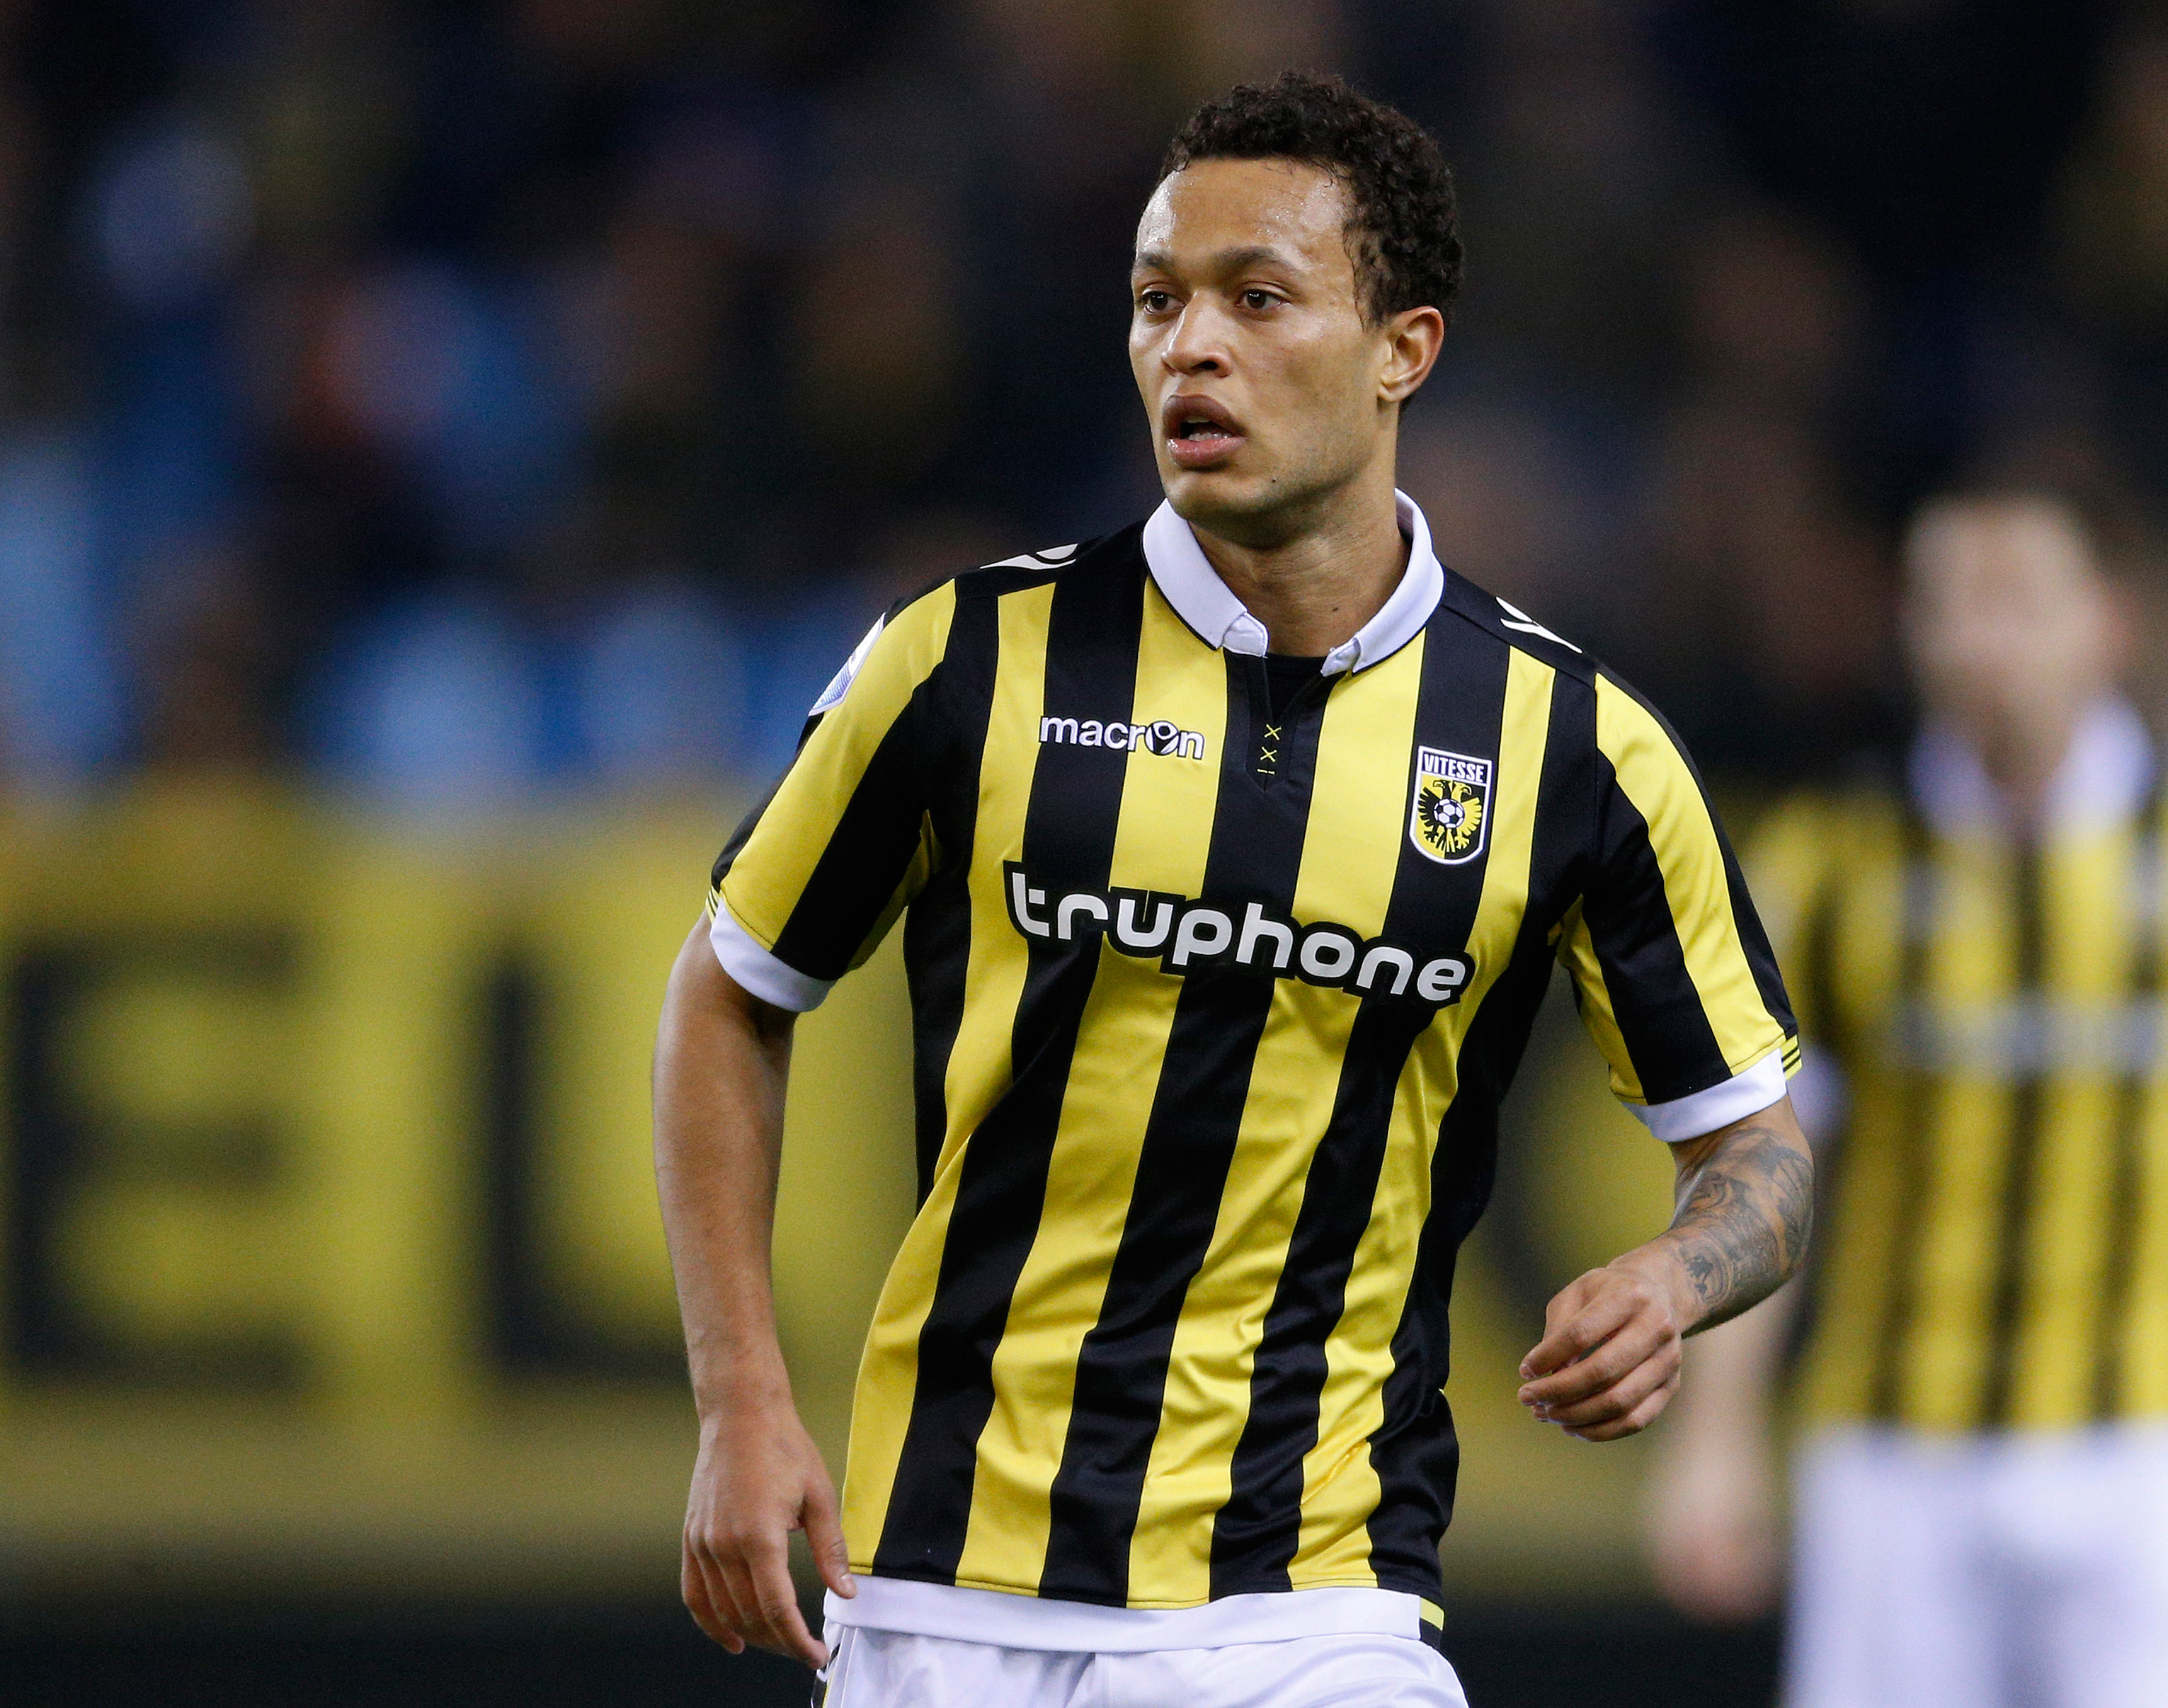 Vitesse-middenvelder Lewis Baker staat in de top van de Eredivisie wat betreft kansen scheppen uit spelhervattingen.